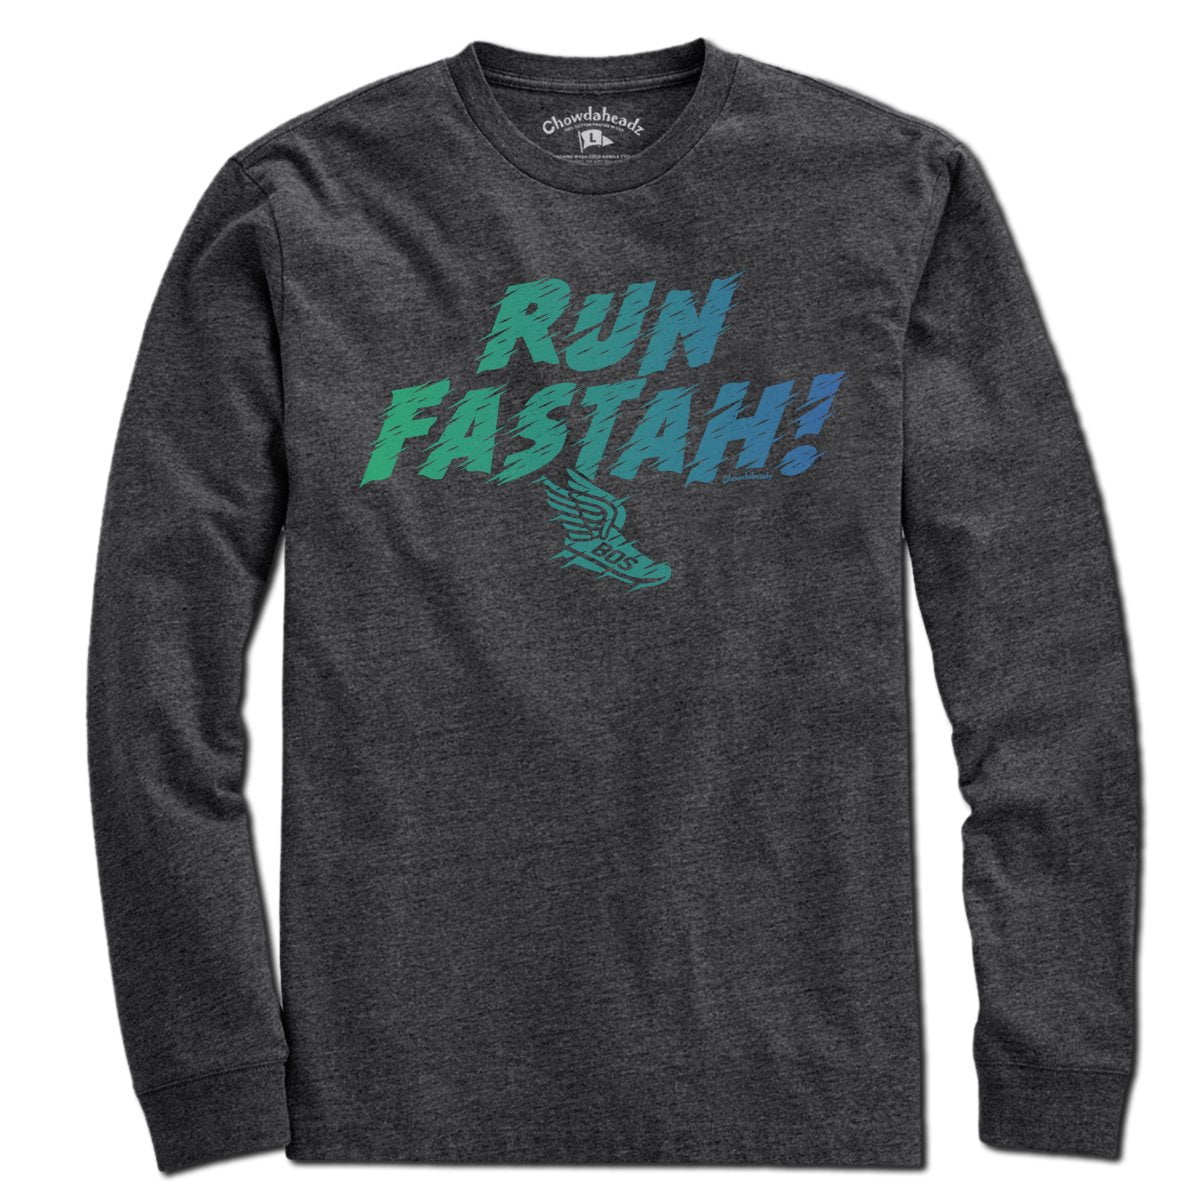 Run Fastah Fadeout T-Shirt - Chowdaheadz